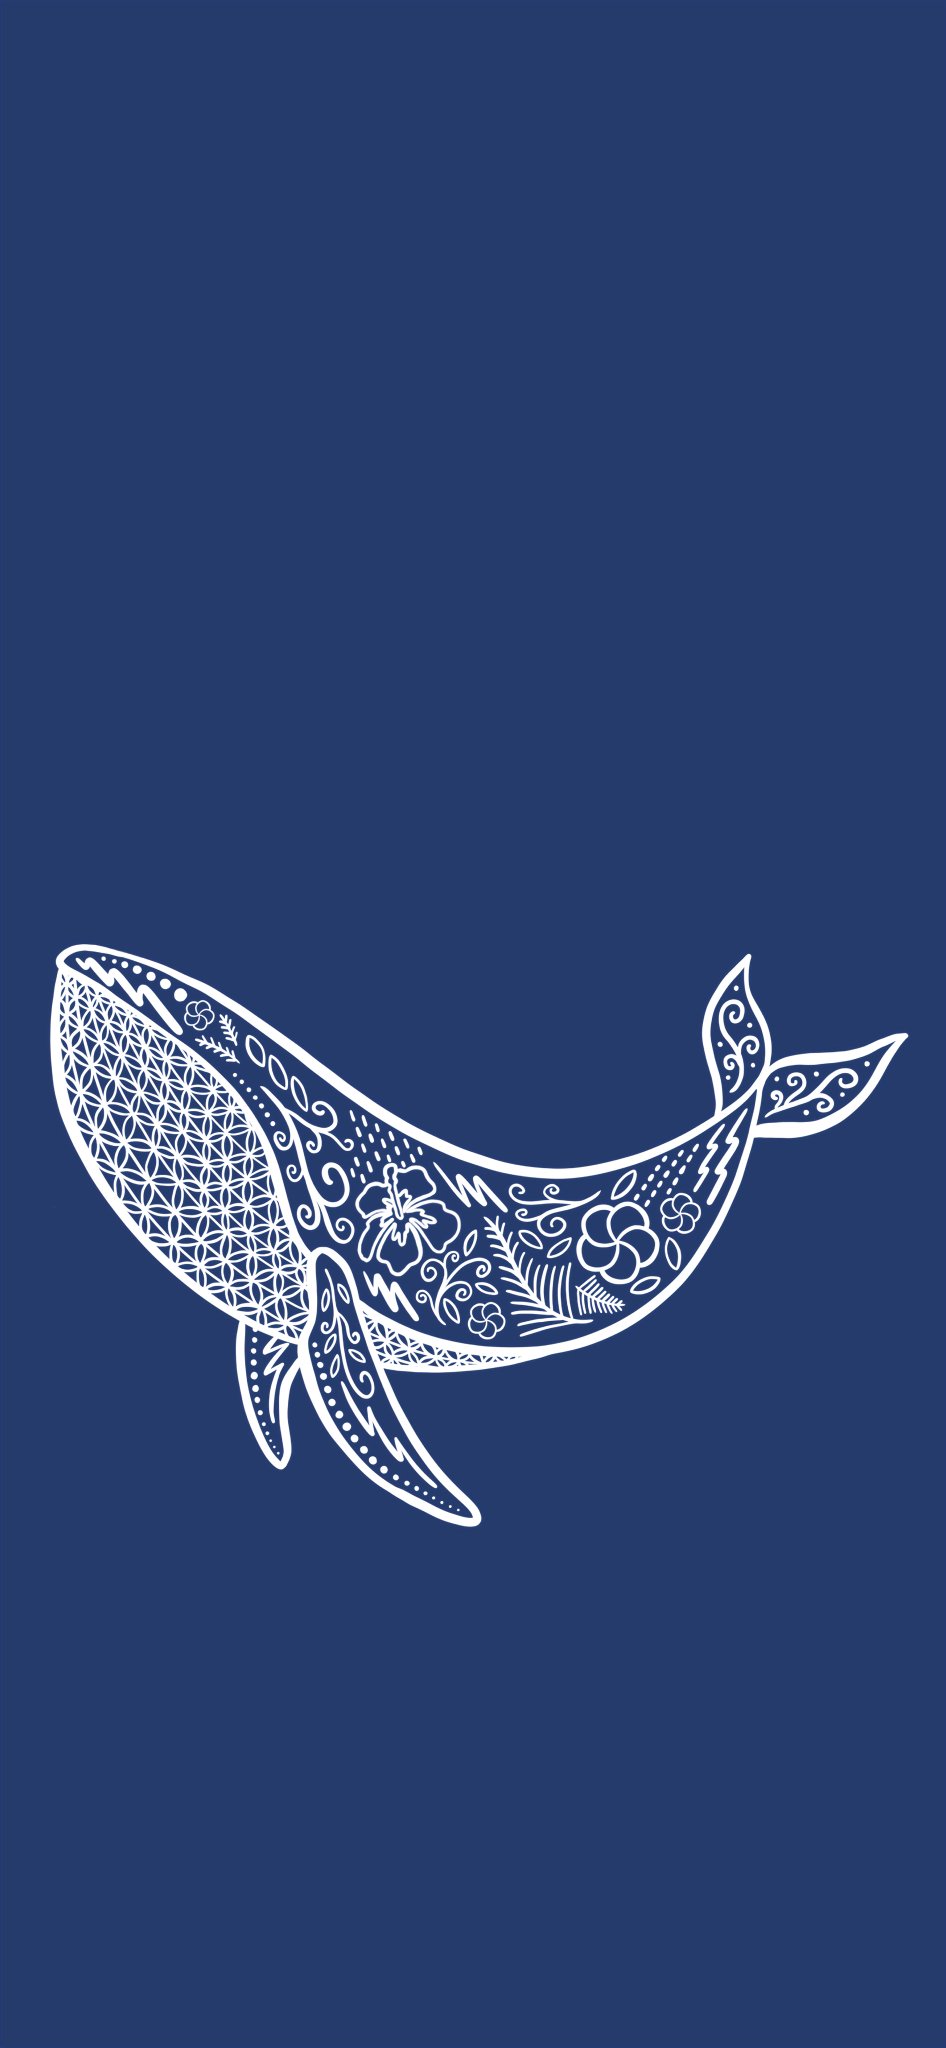 りんりん クジラ 無断転載禁止 保存はご自由にどうぞ 線画 イラスト シンプル おしゃれ クジラ ハワイアン 壁紙 スマホ壁紙 Iphone壁紙 絵描きさんと繋がりたい イラスト好きな人と繋がりたい